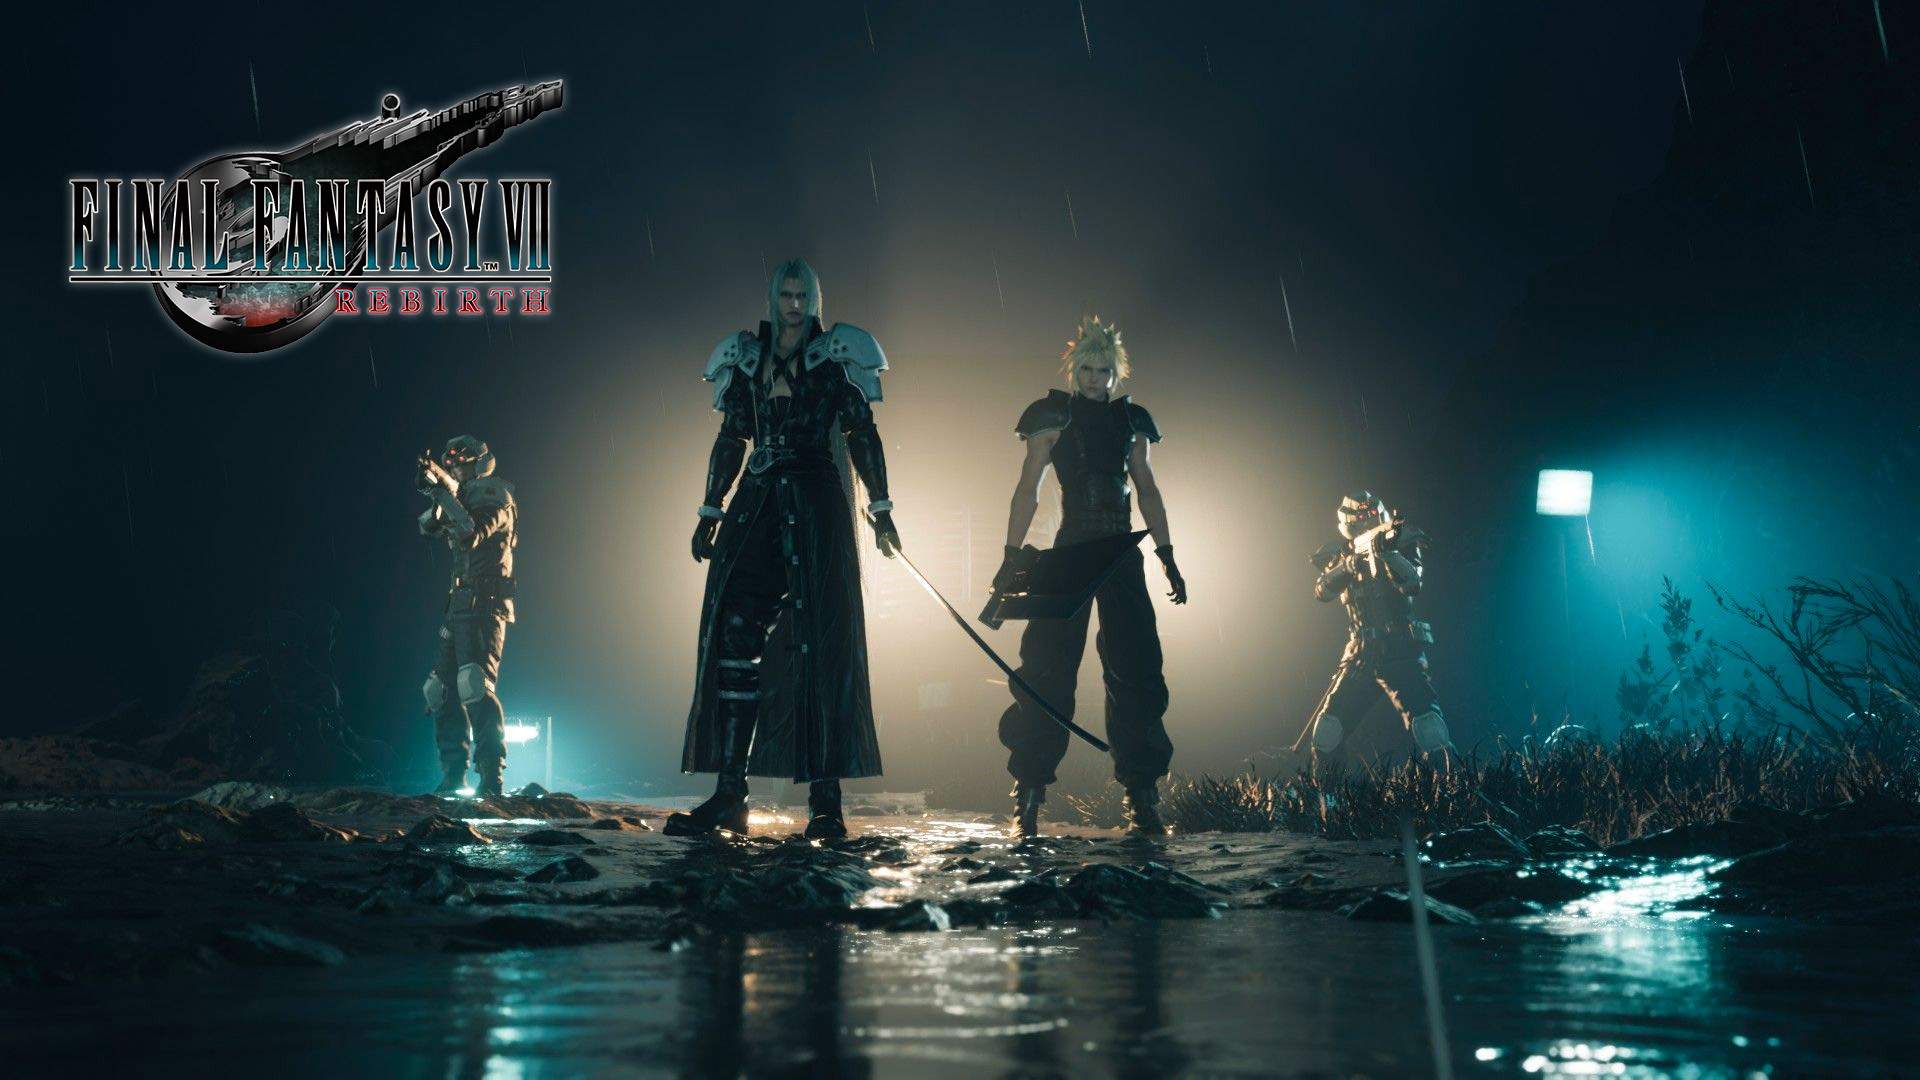 Sephiroth und Cloud stehen in der Mitte, während jeweils ein Soldat neben ihnen steht.